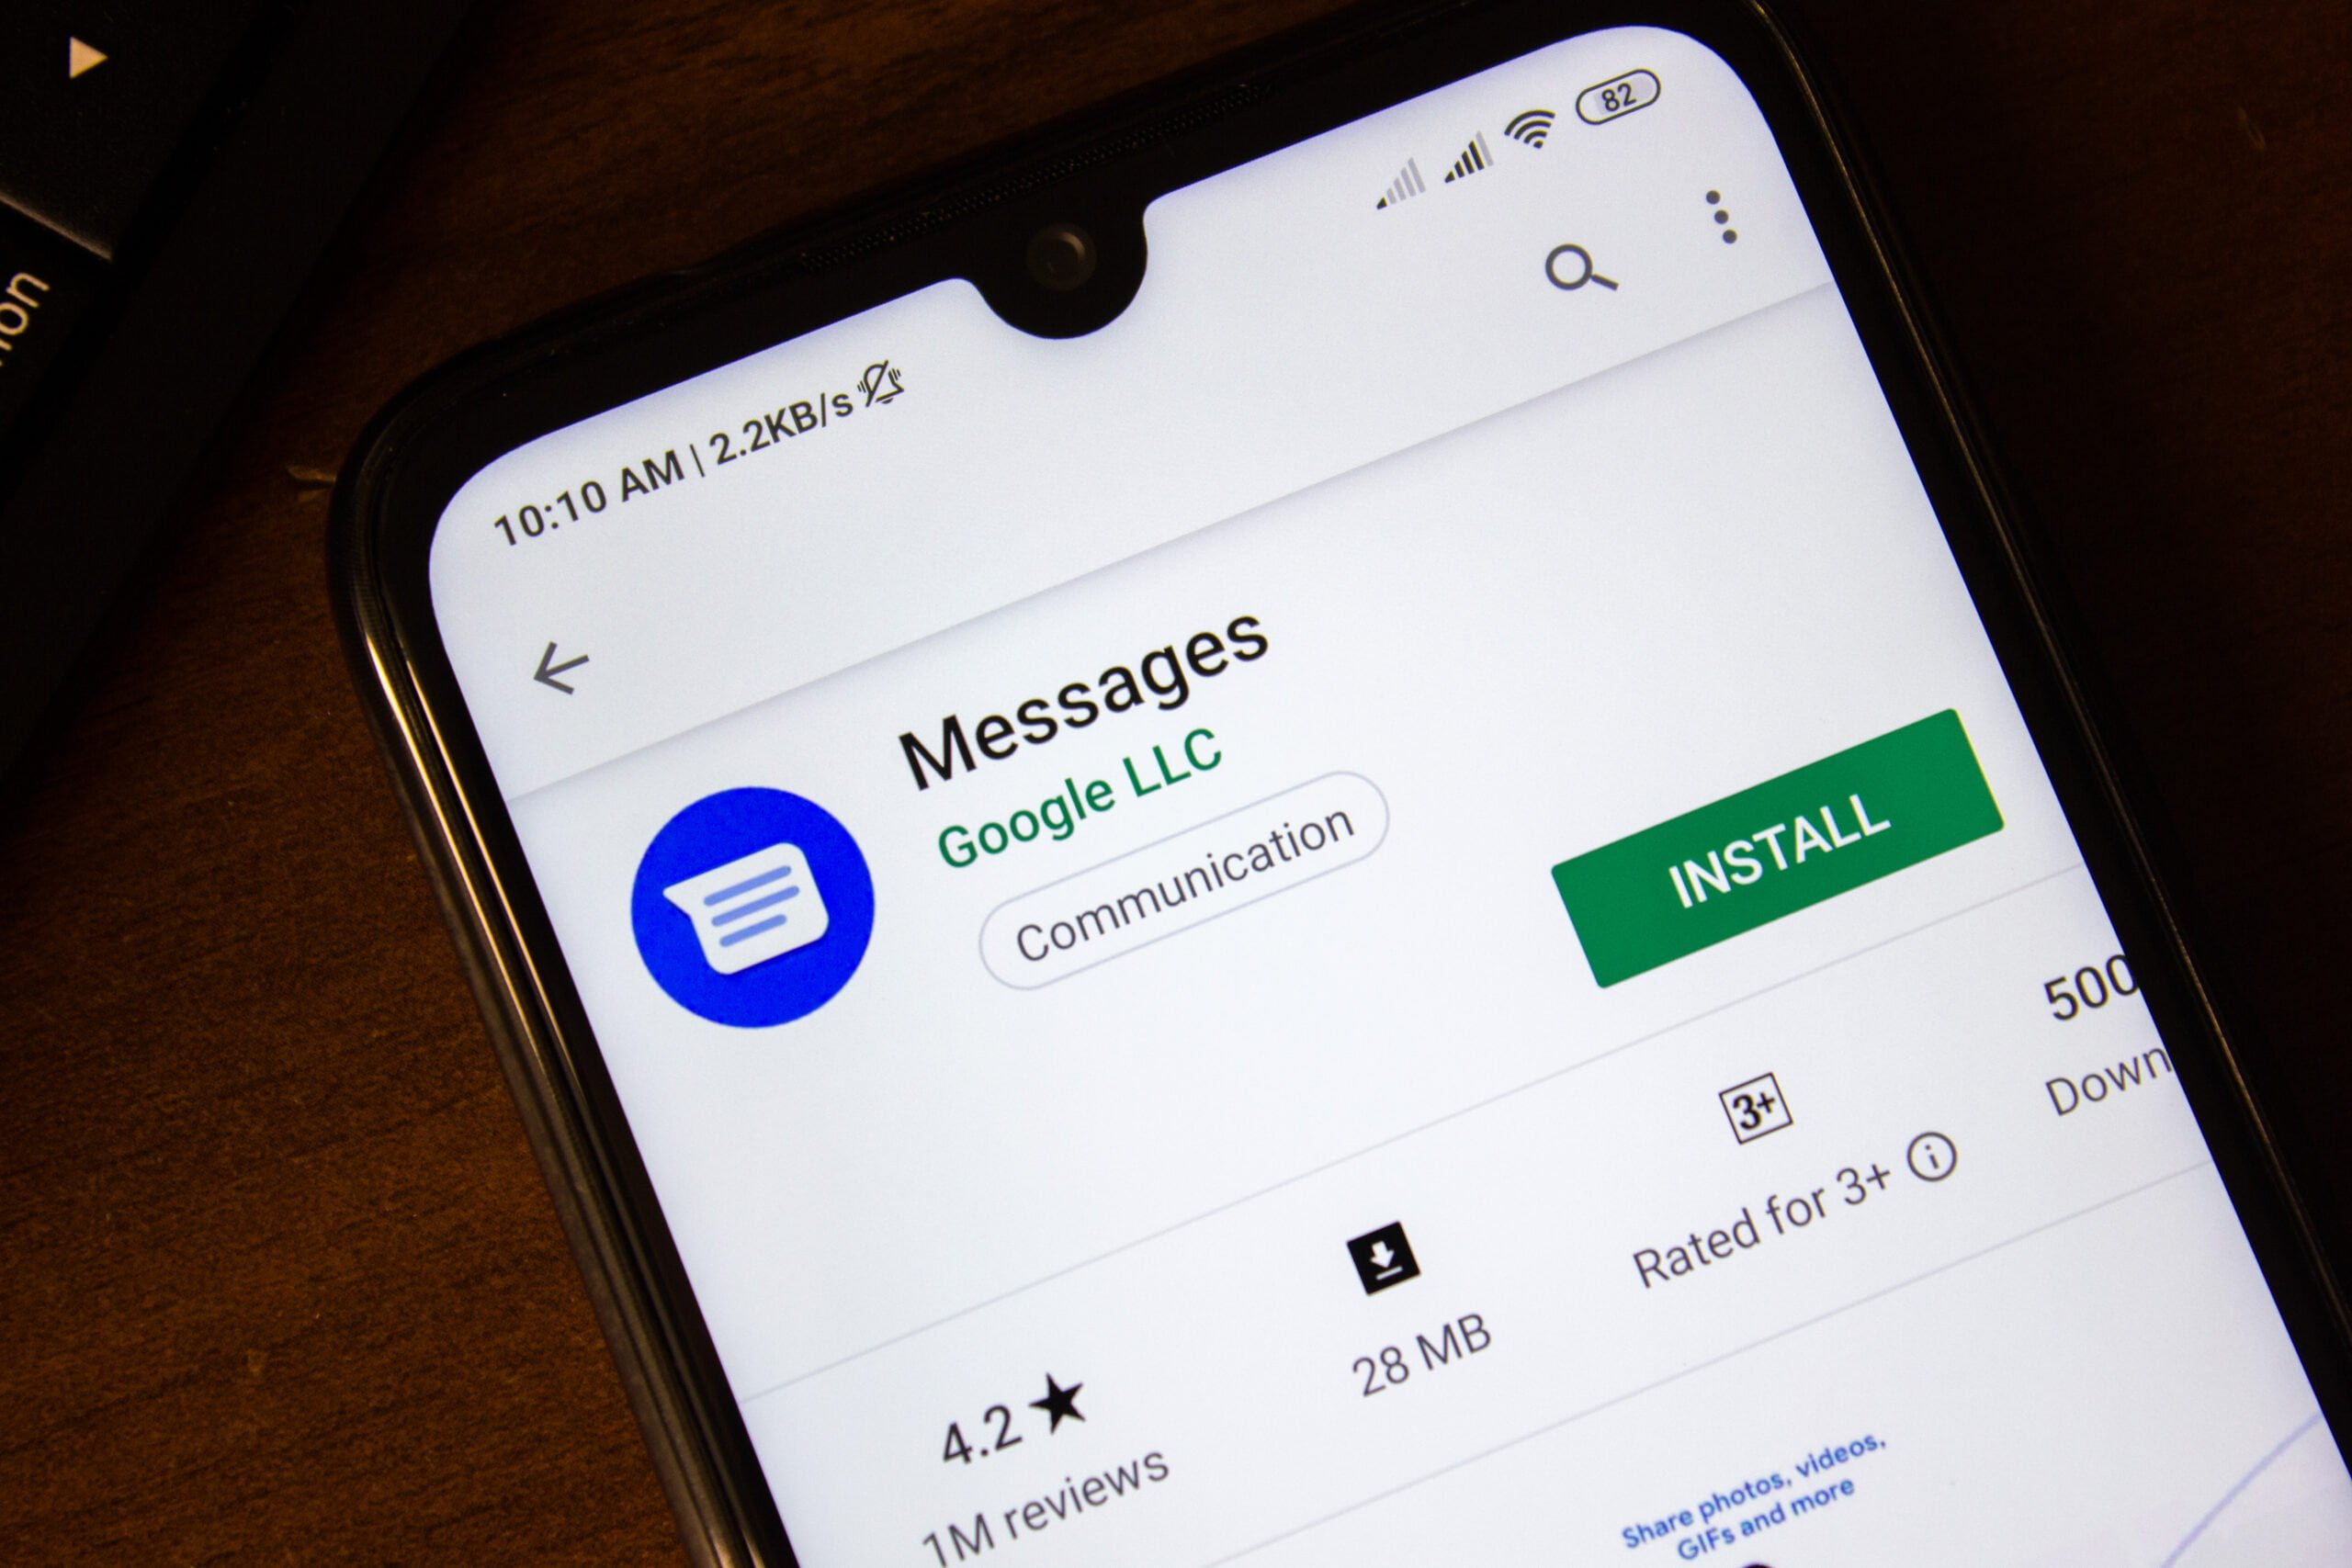 Smartfon z wyświetlonym ekranem sklepu z aplikacjami przedstawiający aplikację "Messages Google LLC" do komunikacji z przyciskiem "INSTALL", oceną 4.2 gwiazdki i podpisem "1M reviews".